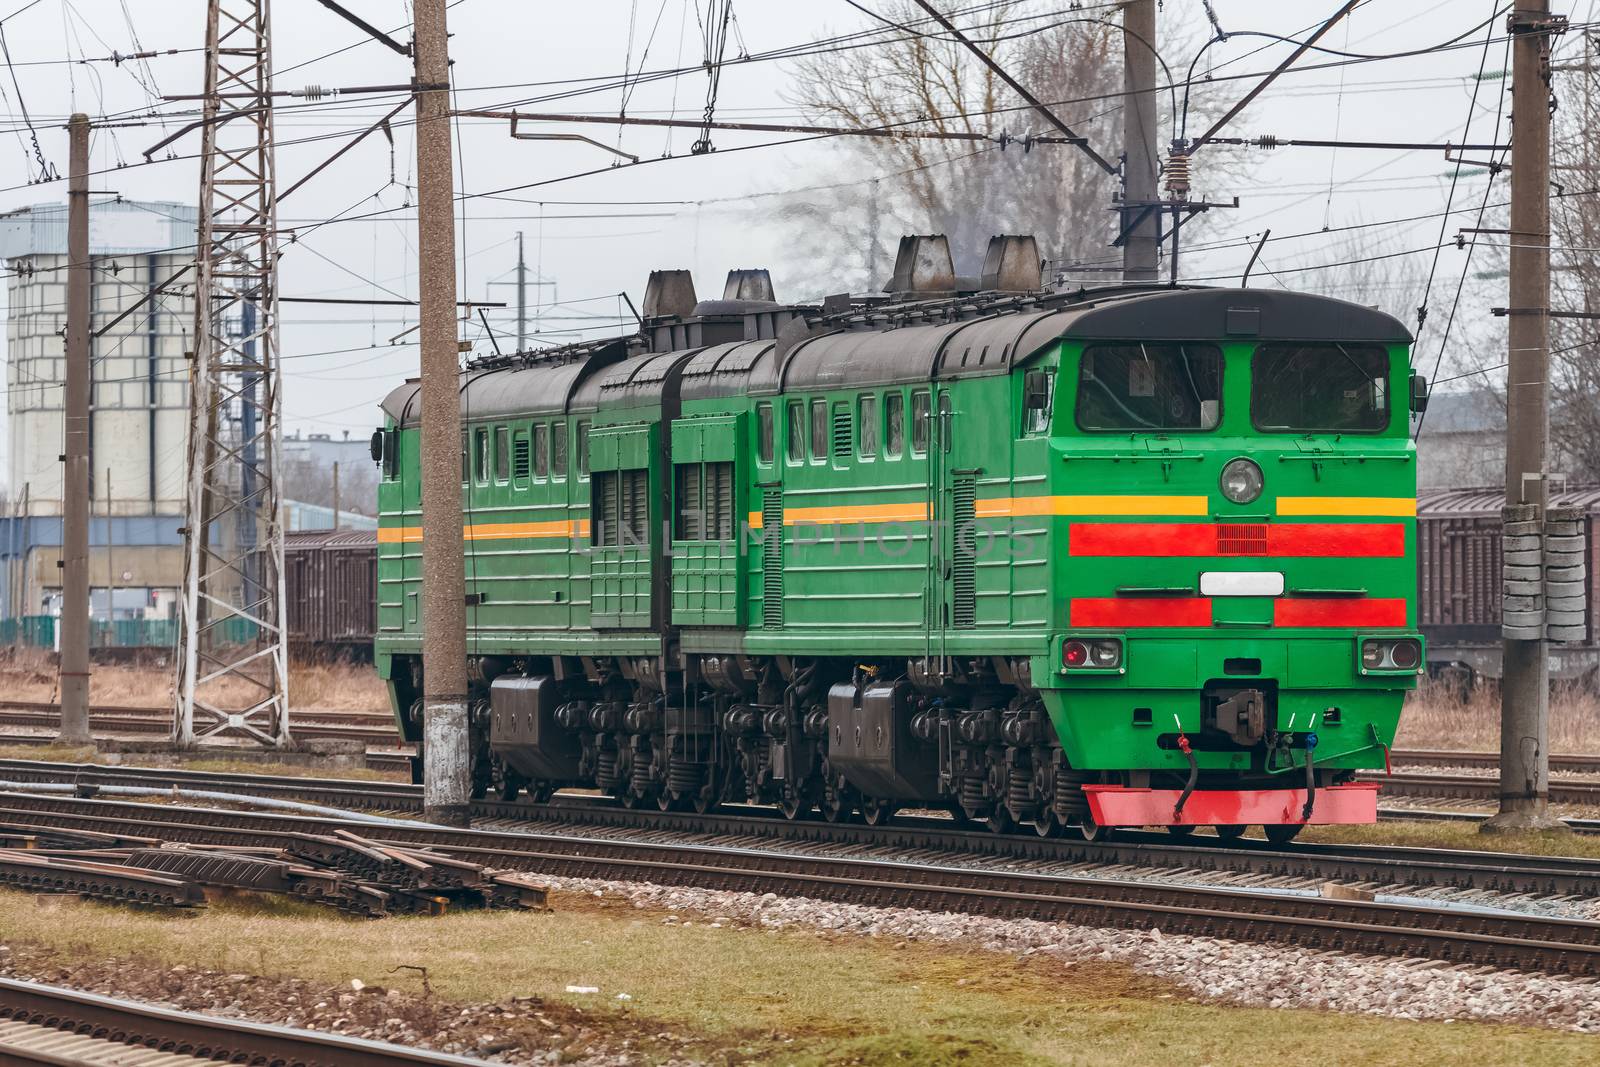 Green diesel locomotive by sengnsp